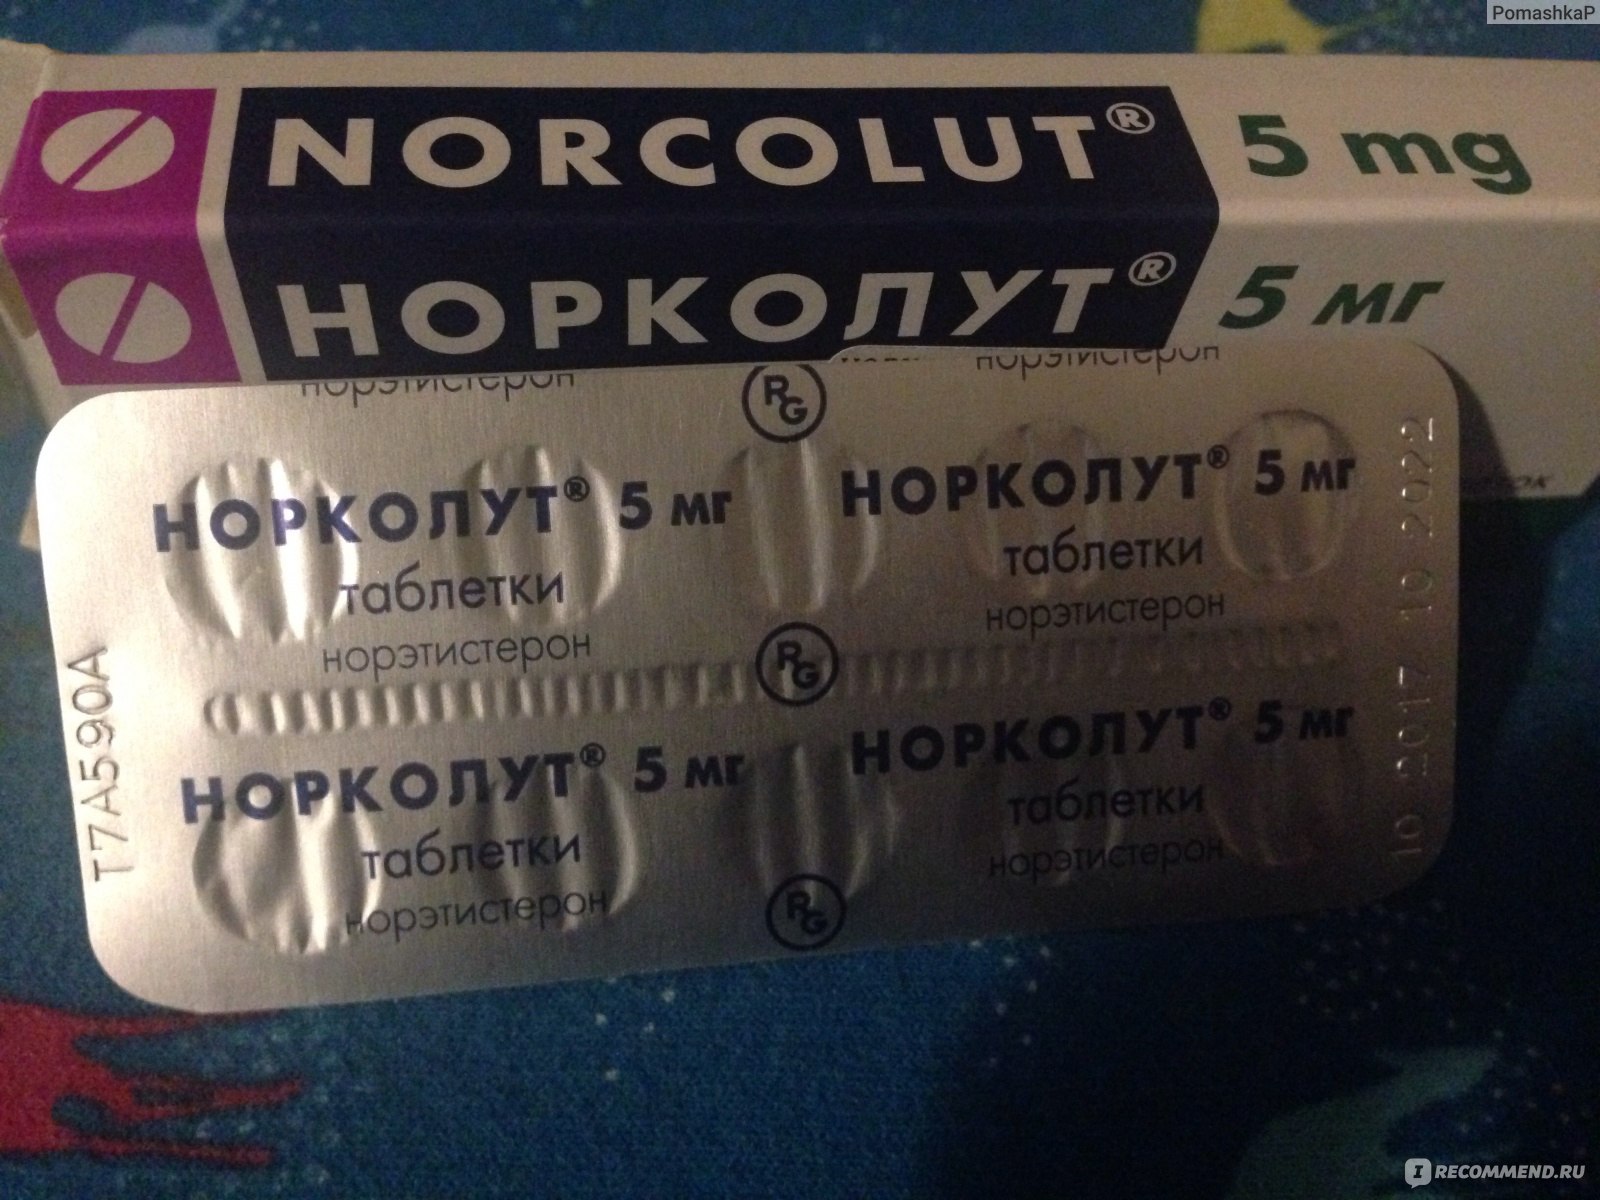 Гормональные препараты Норколут - «Норколут мне тоже не дру» | отзывы